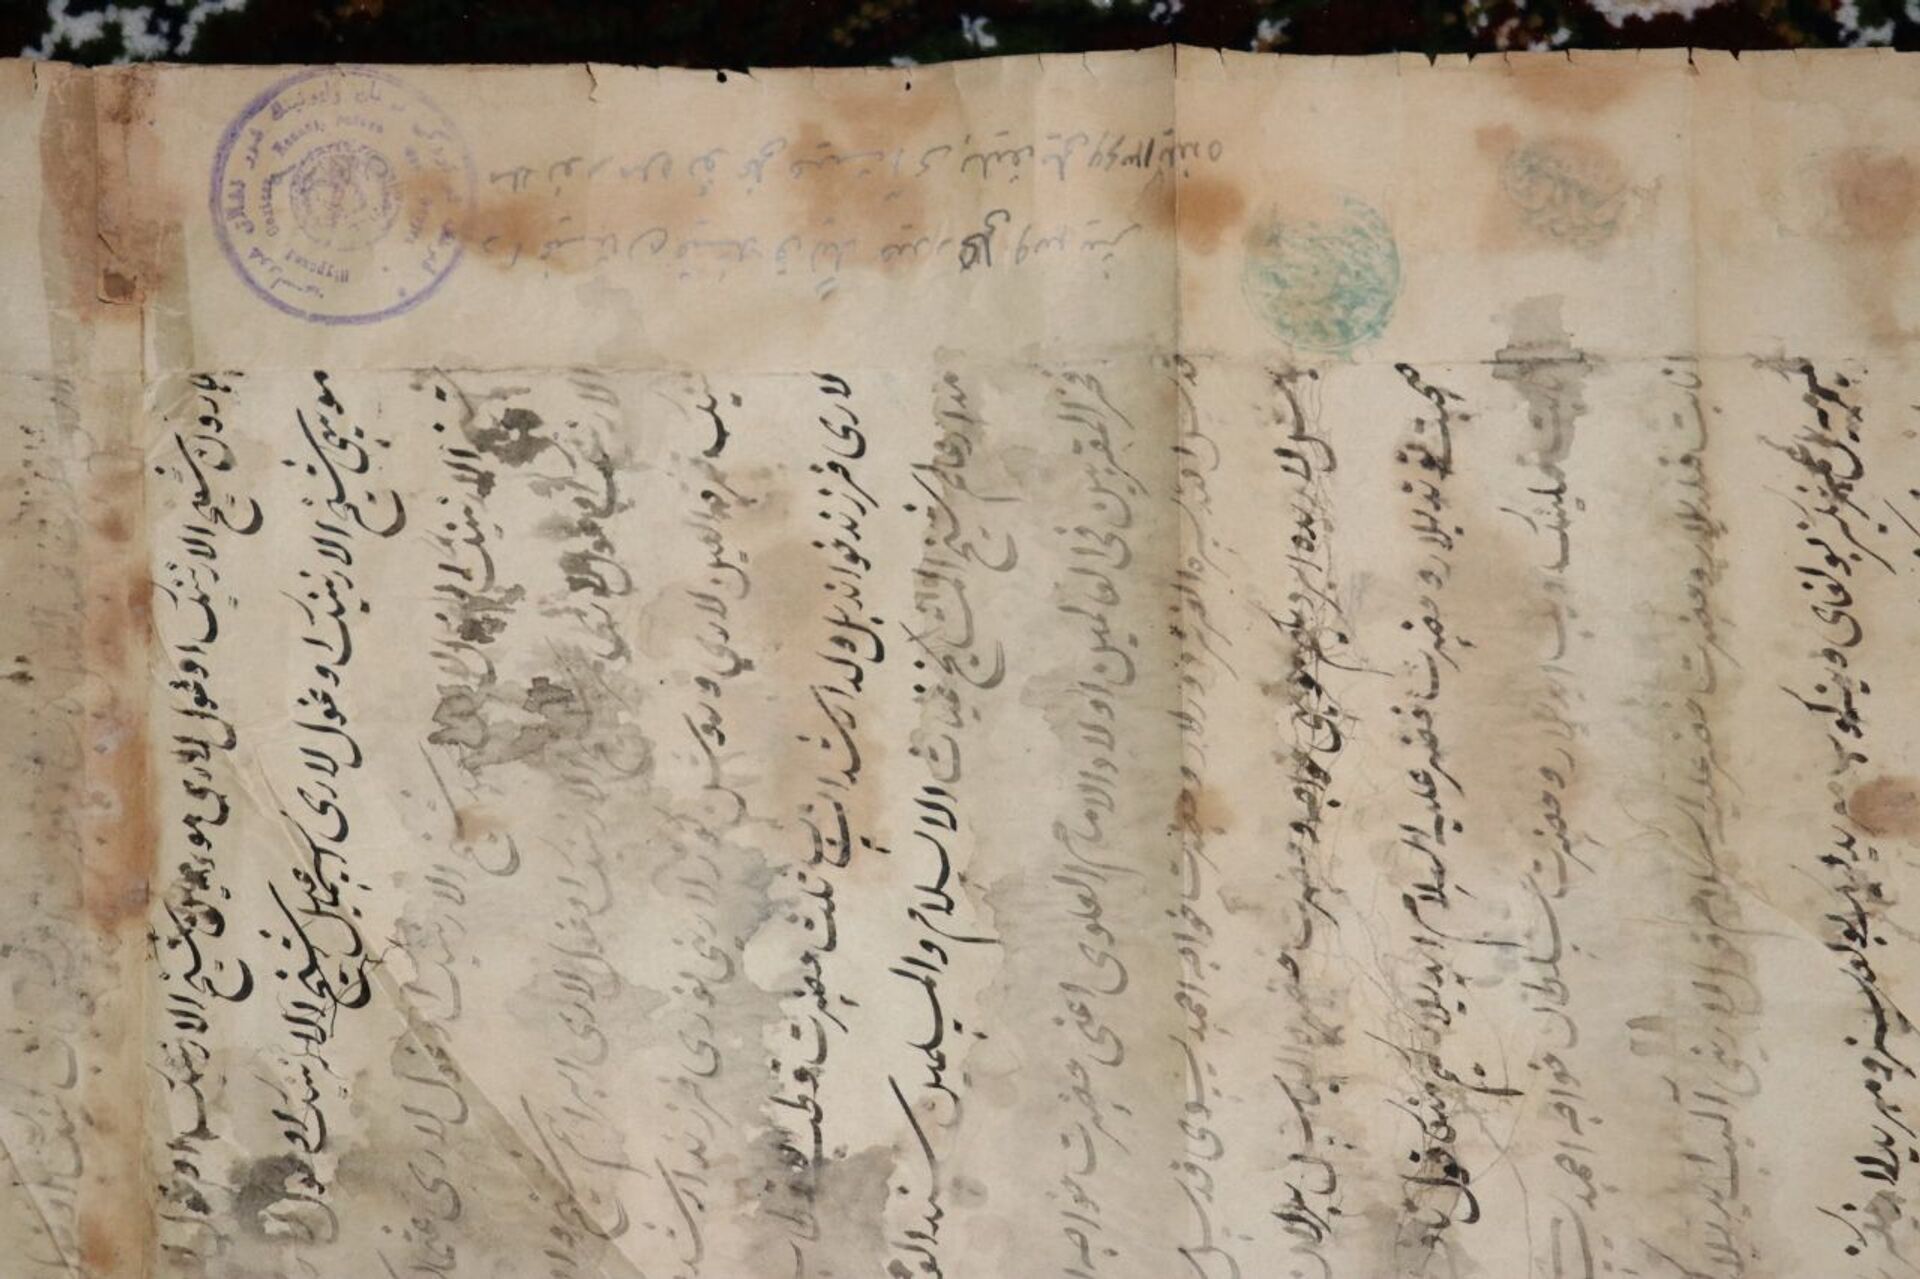 Печать и родословная Ходжи Ахмета Яссауи найдены в Узбекистане - Sputnik Казахстан, 1920, 27.02.2021